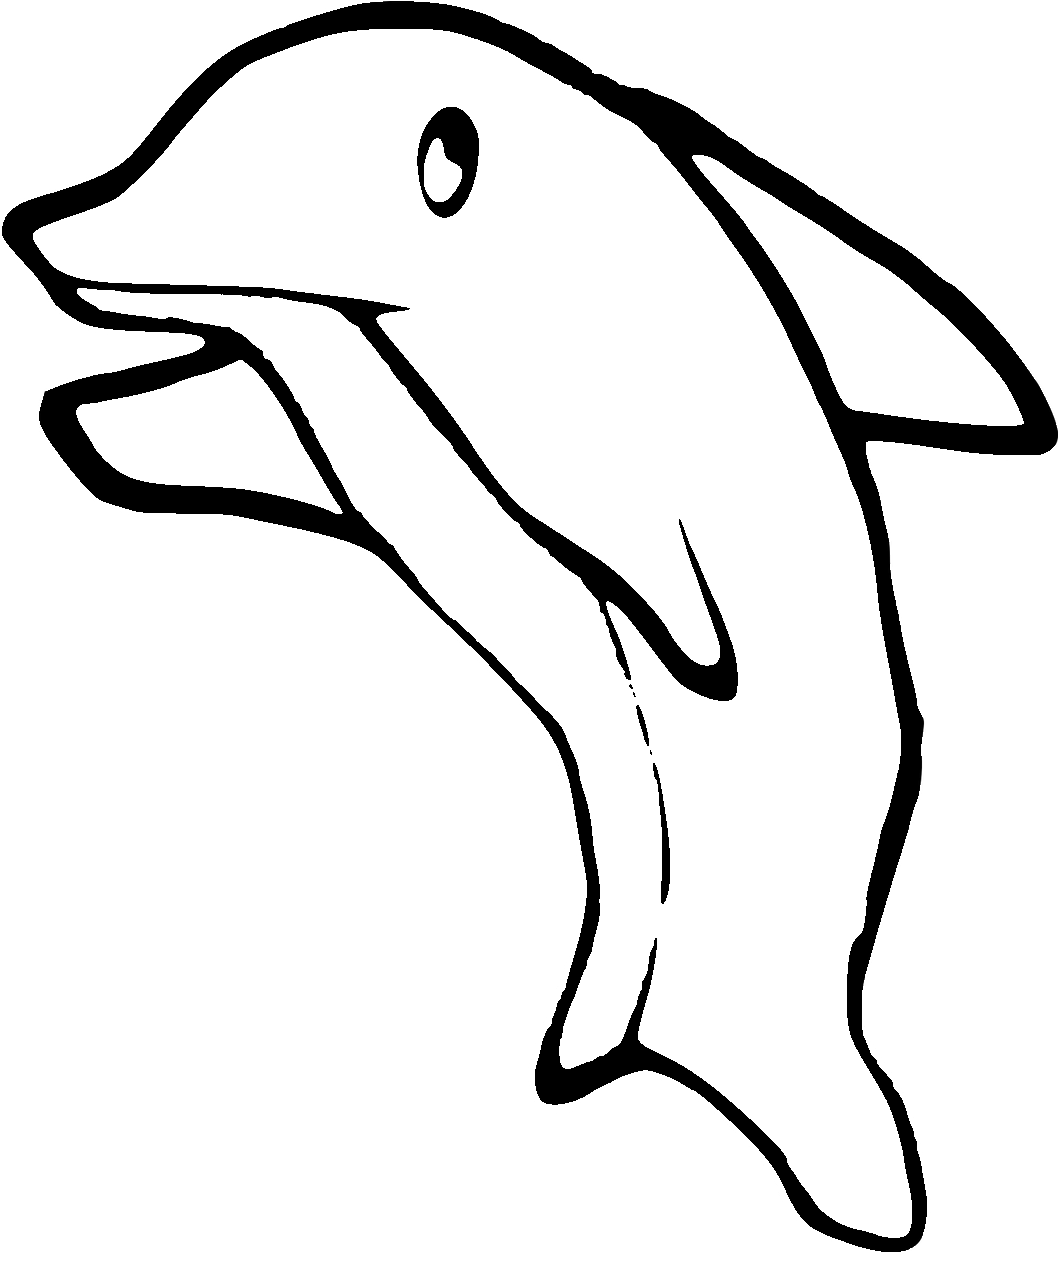 Disegno da colorare di delfino n.33